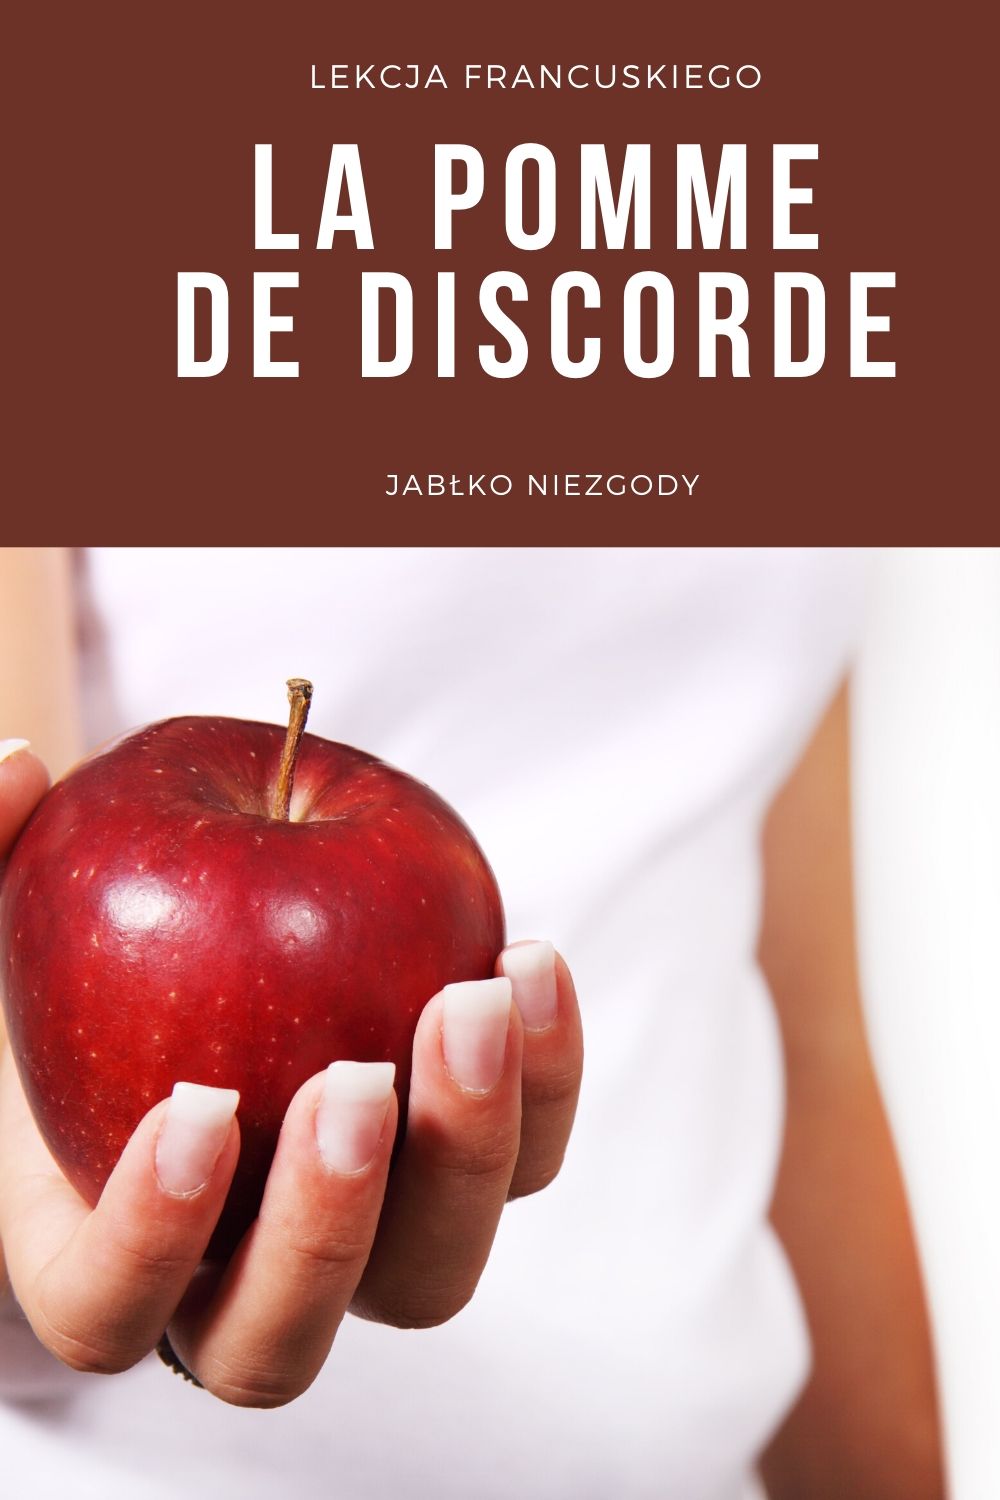 Dlaczego Francuzi mówią: jabłko niezgody - la pomme de discorde?